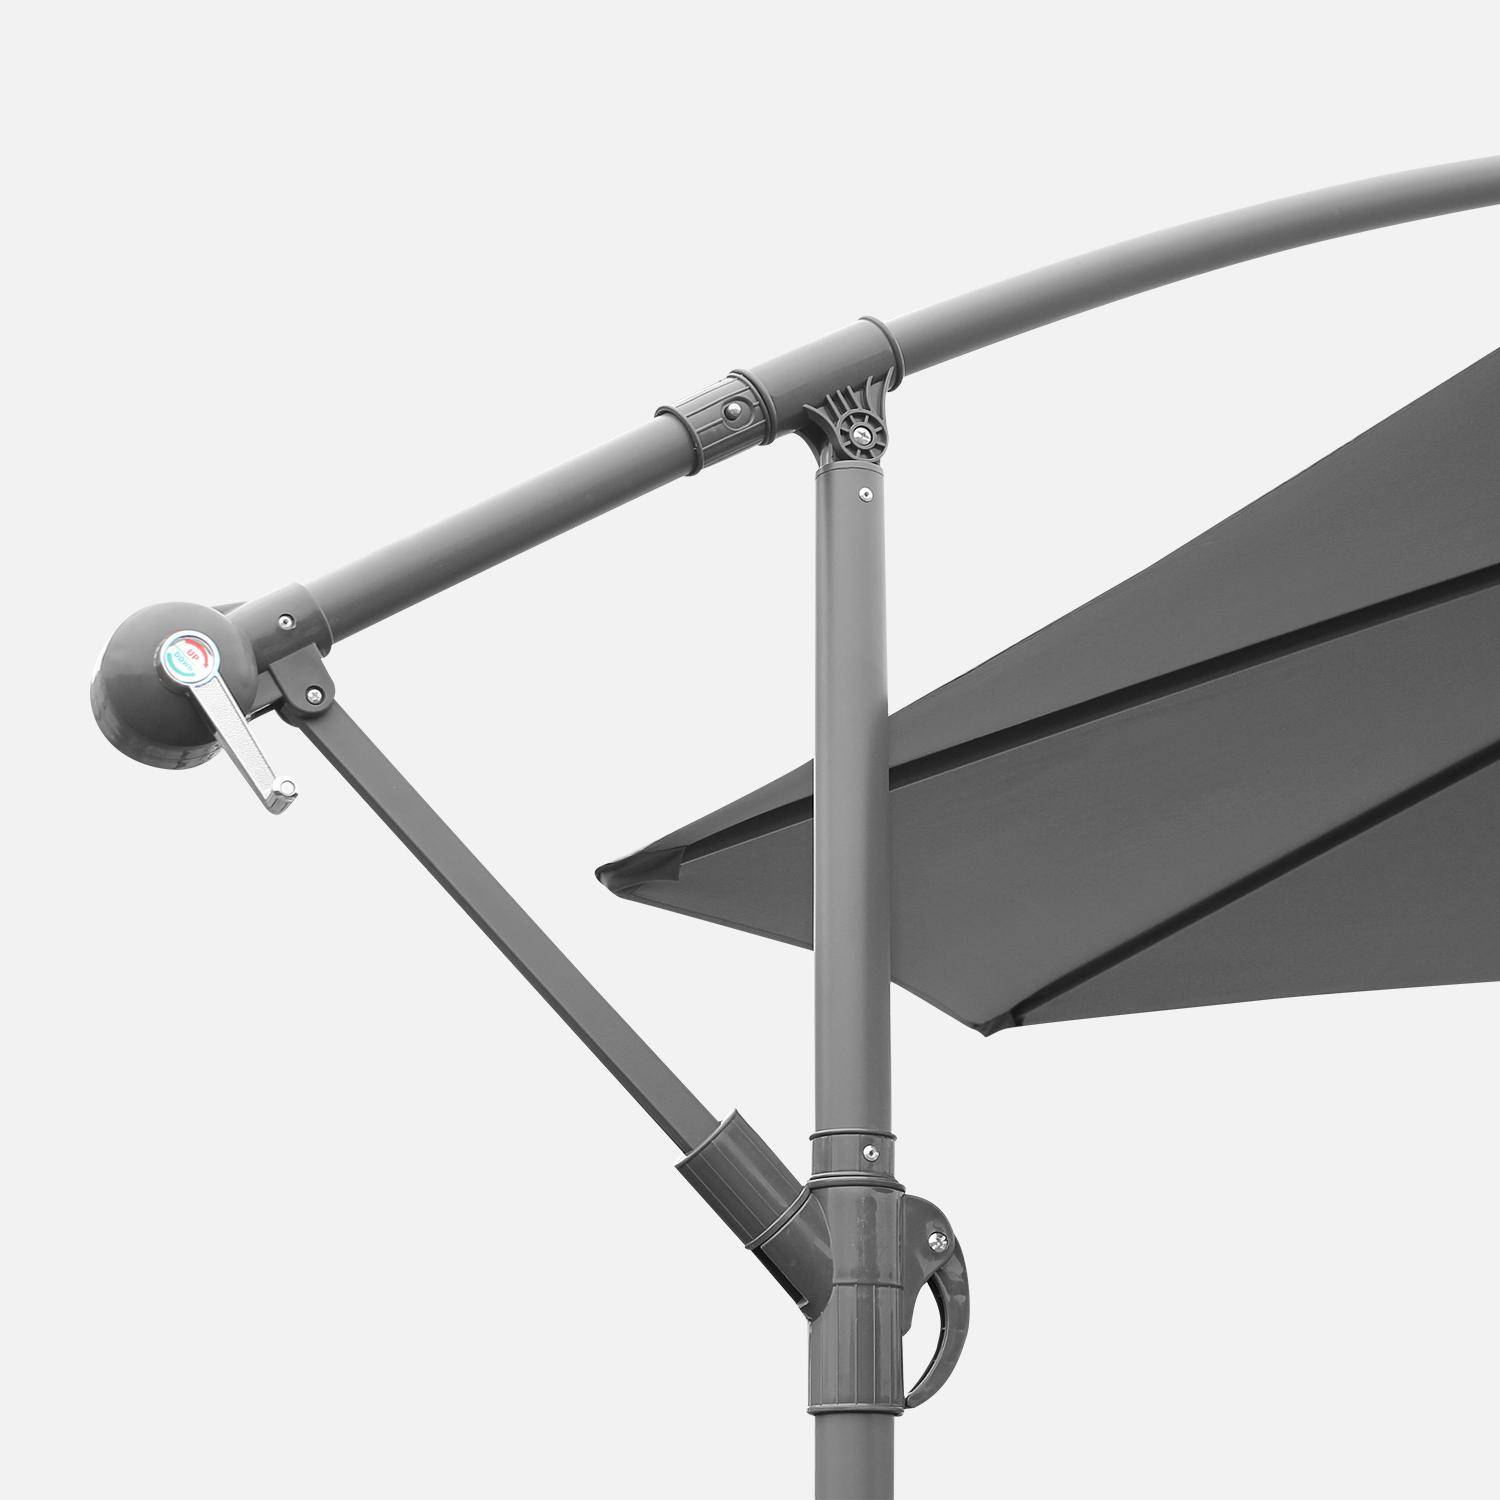 Ombrellone offset Ø350cm - Hardelot - Colore grigio, struttura antracite, manovella a scomparsa.,sweeek,Photo4